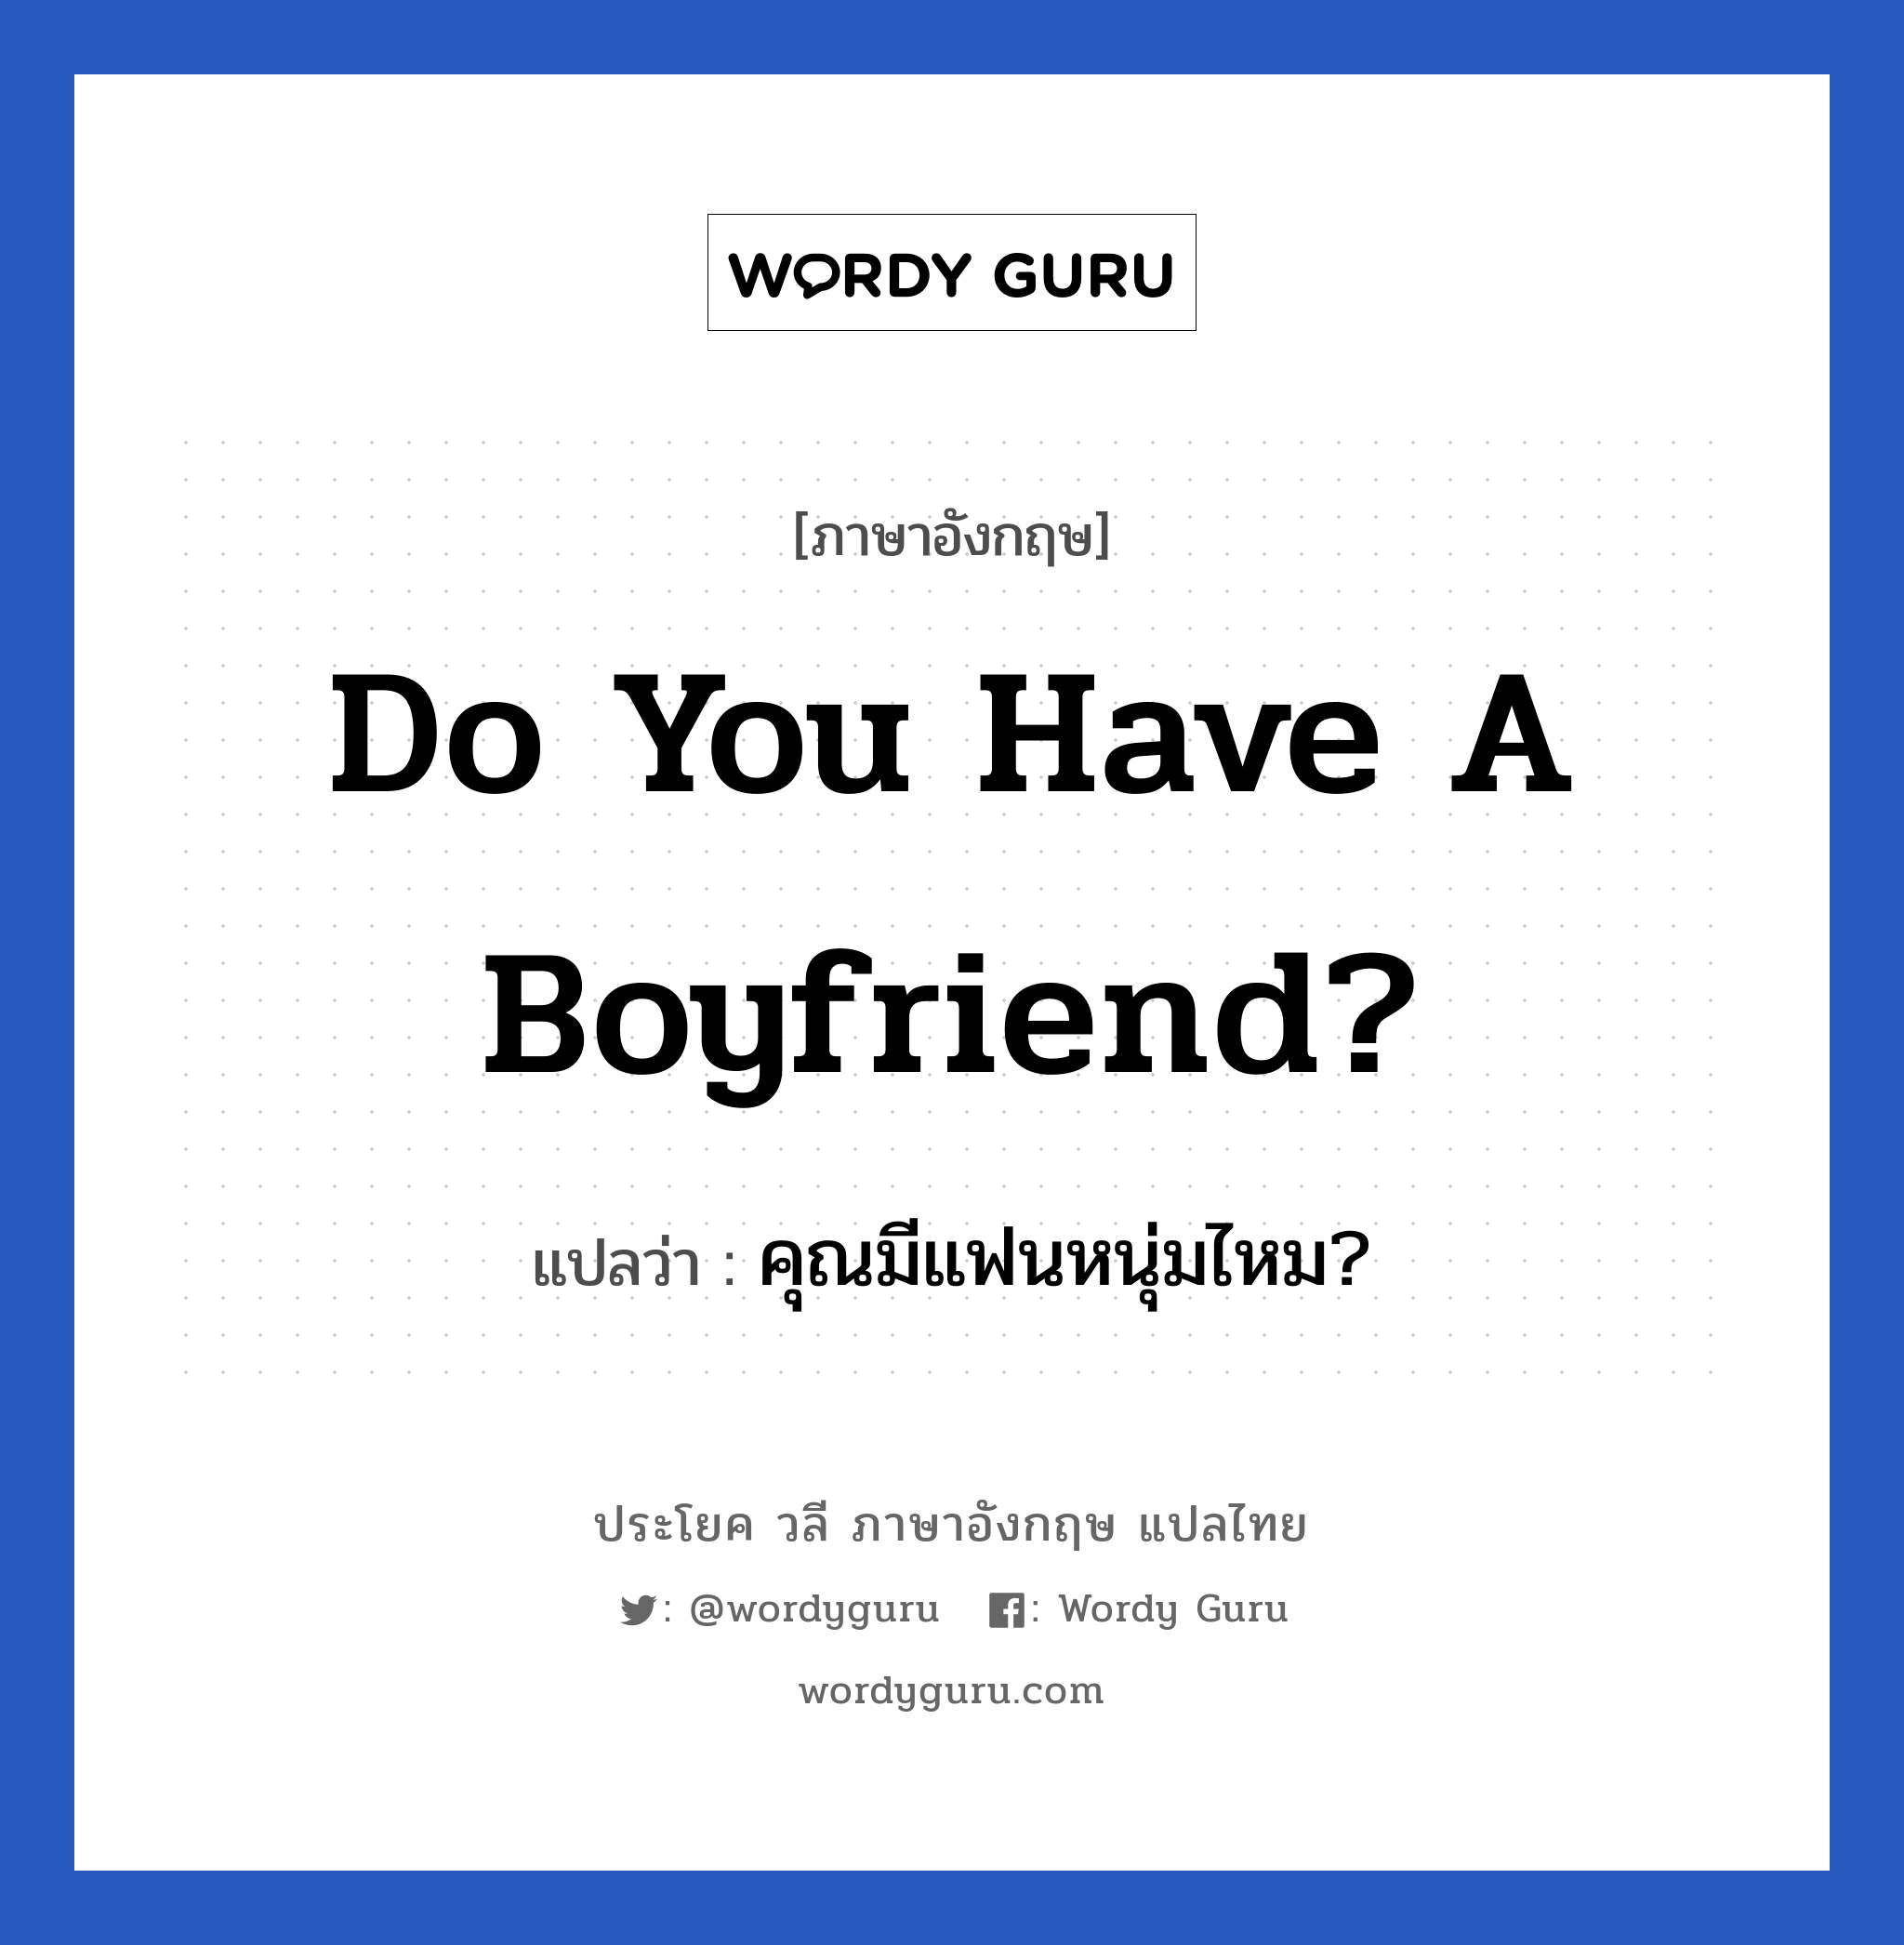 คุณมีแฟนหนุ่มไหม? ภาษาอังกฤษ?, วลีภาษาอังกฤษ คุณมีแฟนหนุ่มไหม? แปลว่า Do you have a boyfriend?